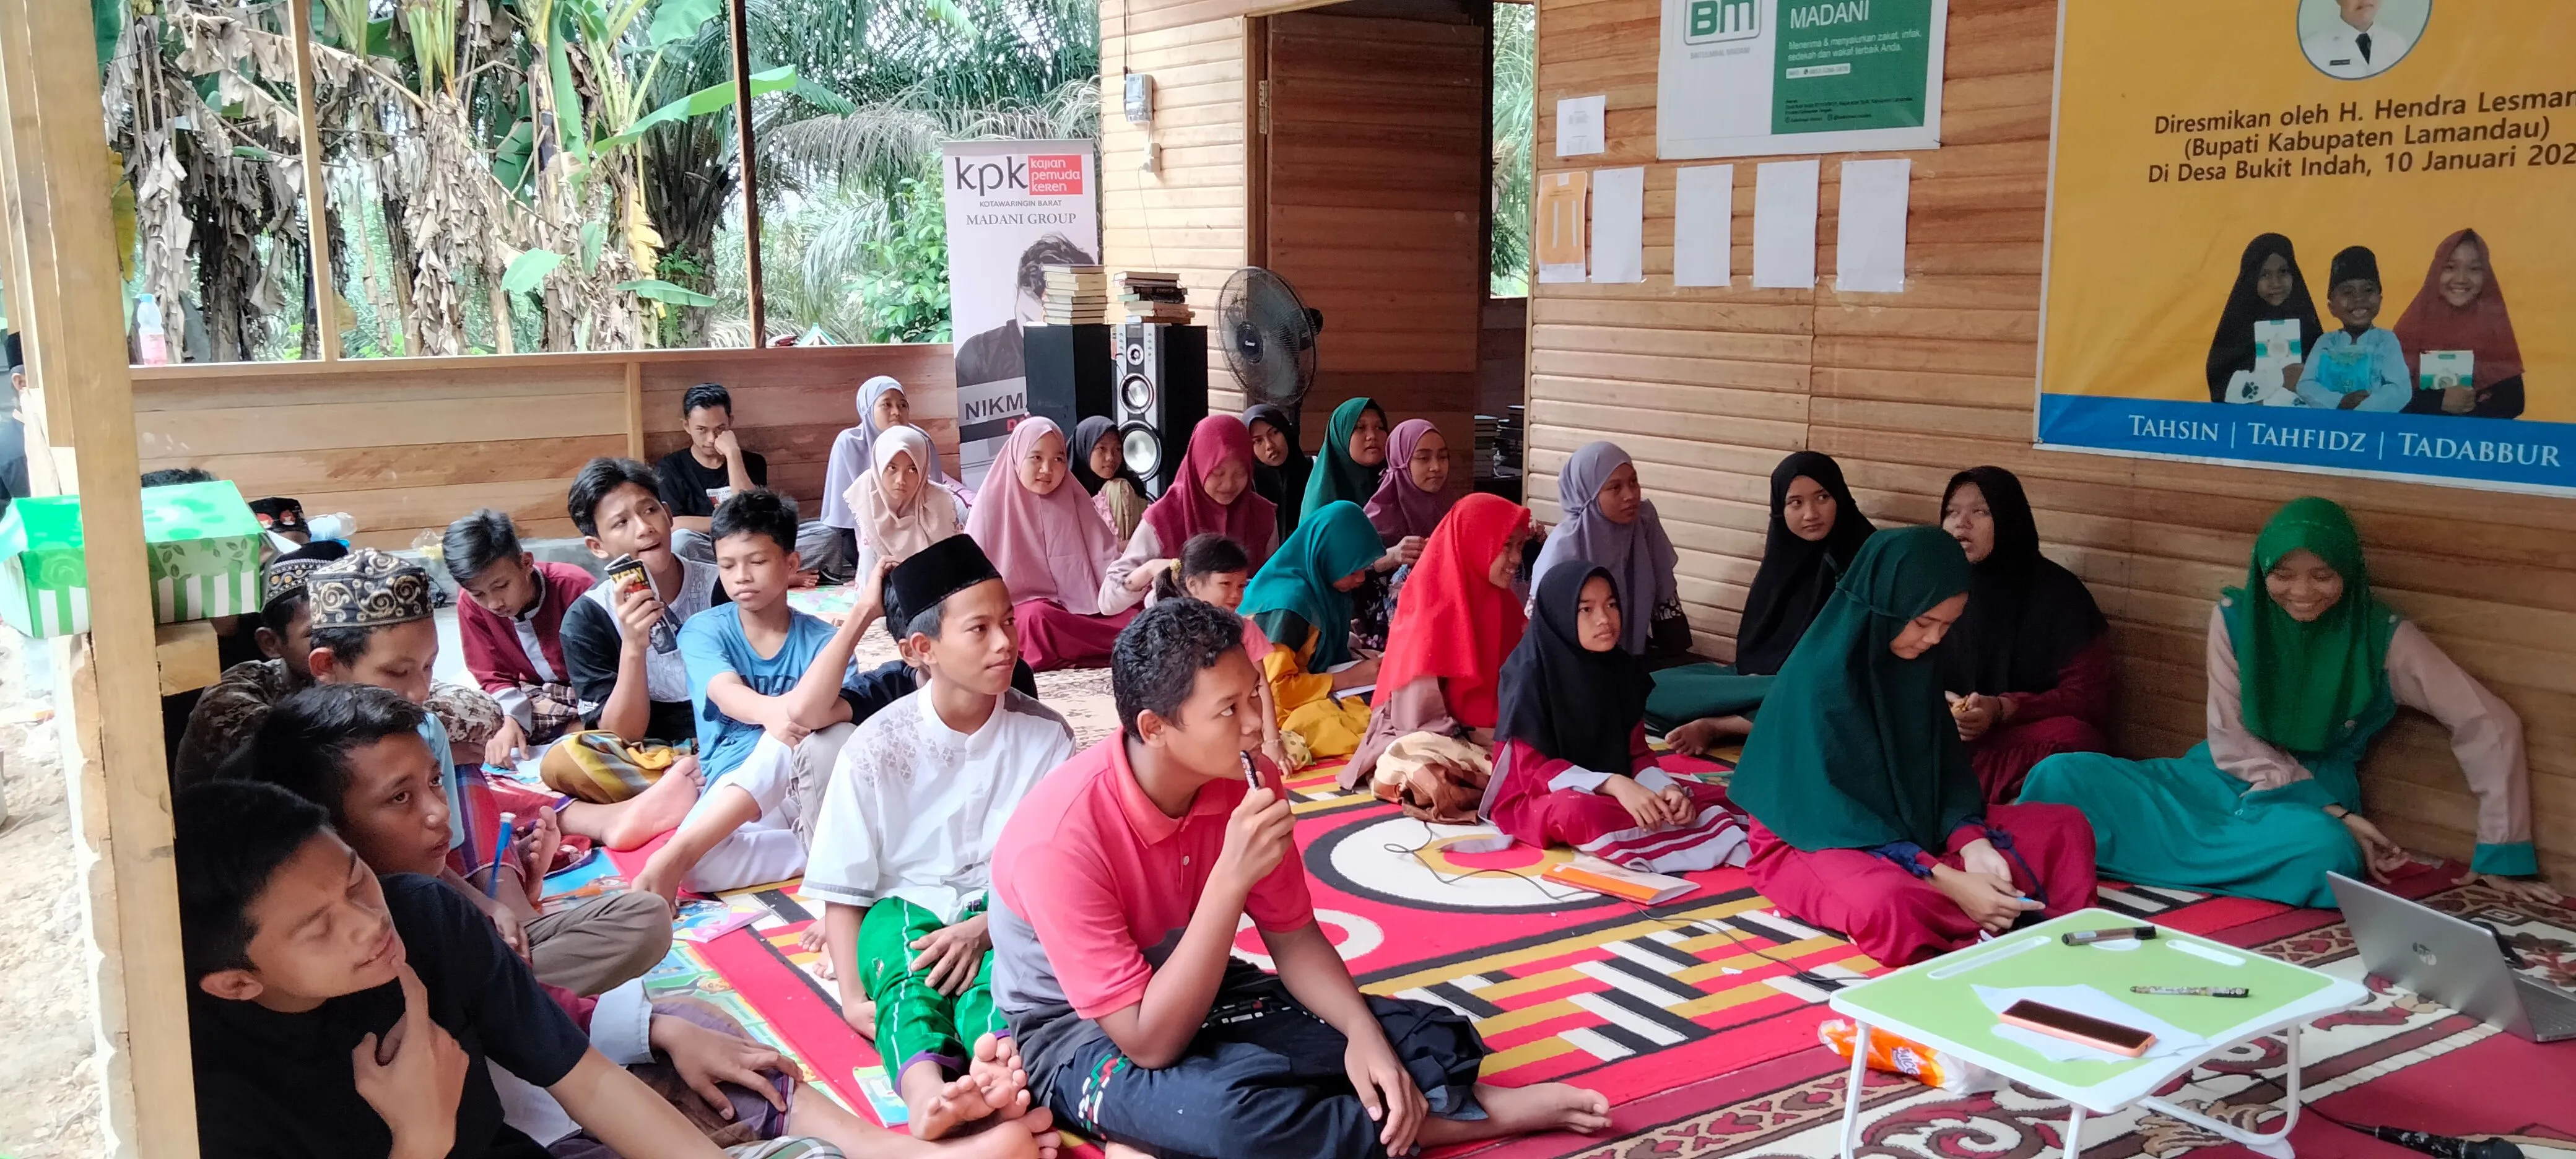 Pemuda Desa Bukit Indah Ikuti Camping Quran